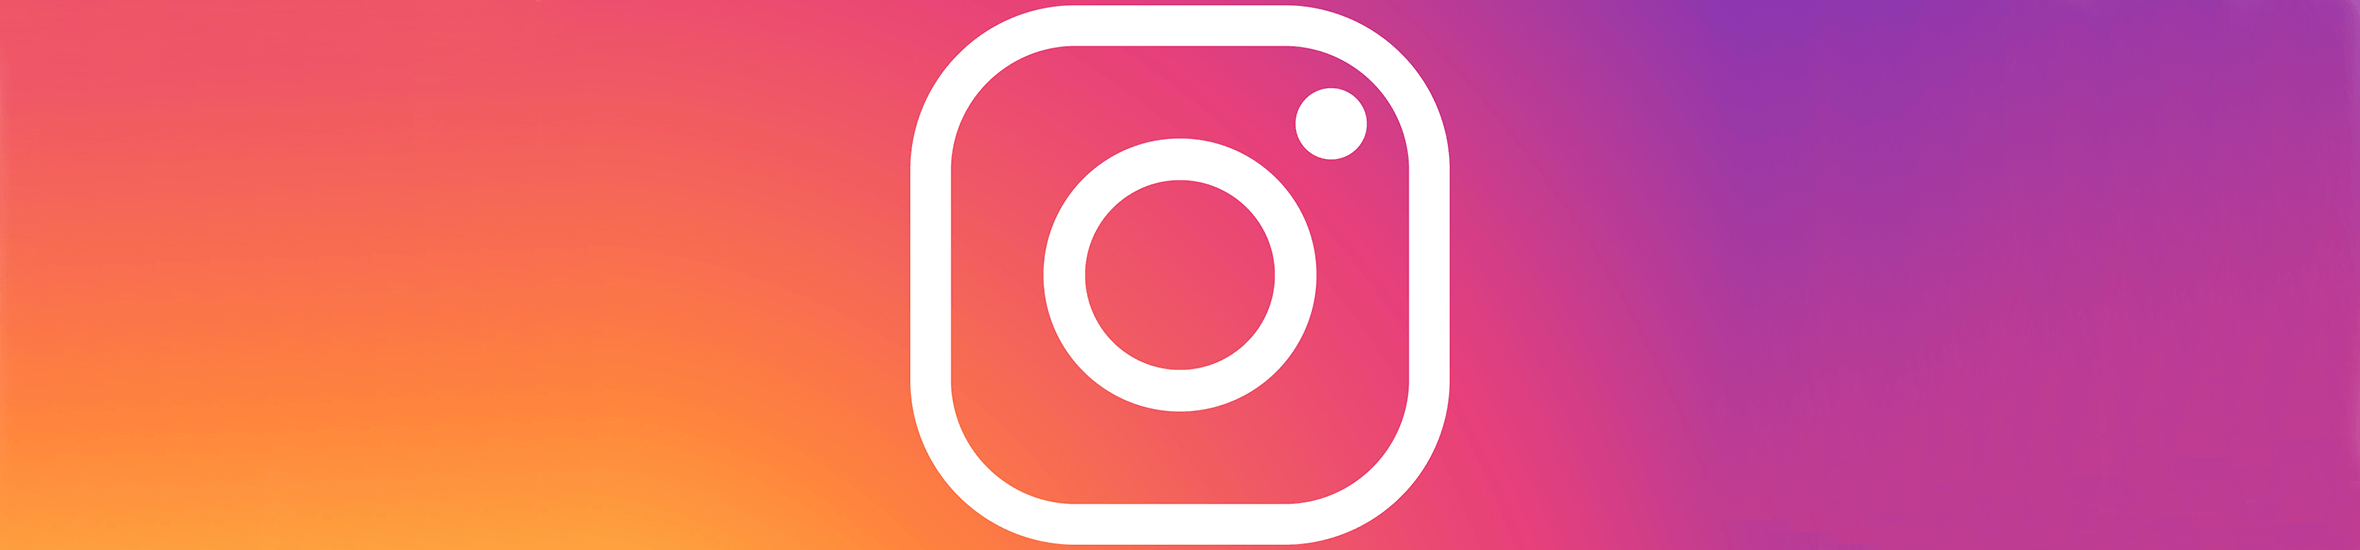 La publicité Instagram : inspirante et engageante